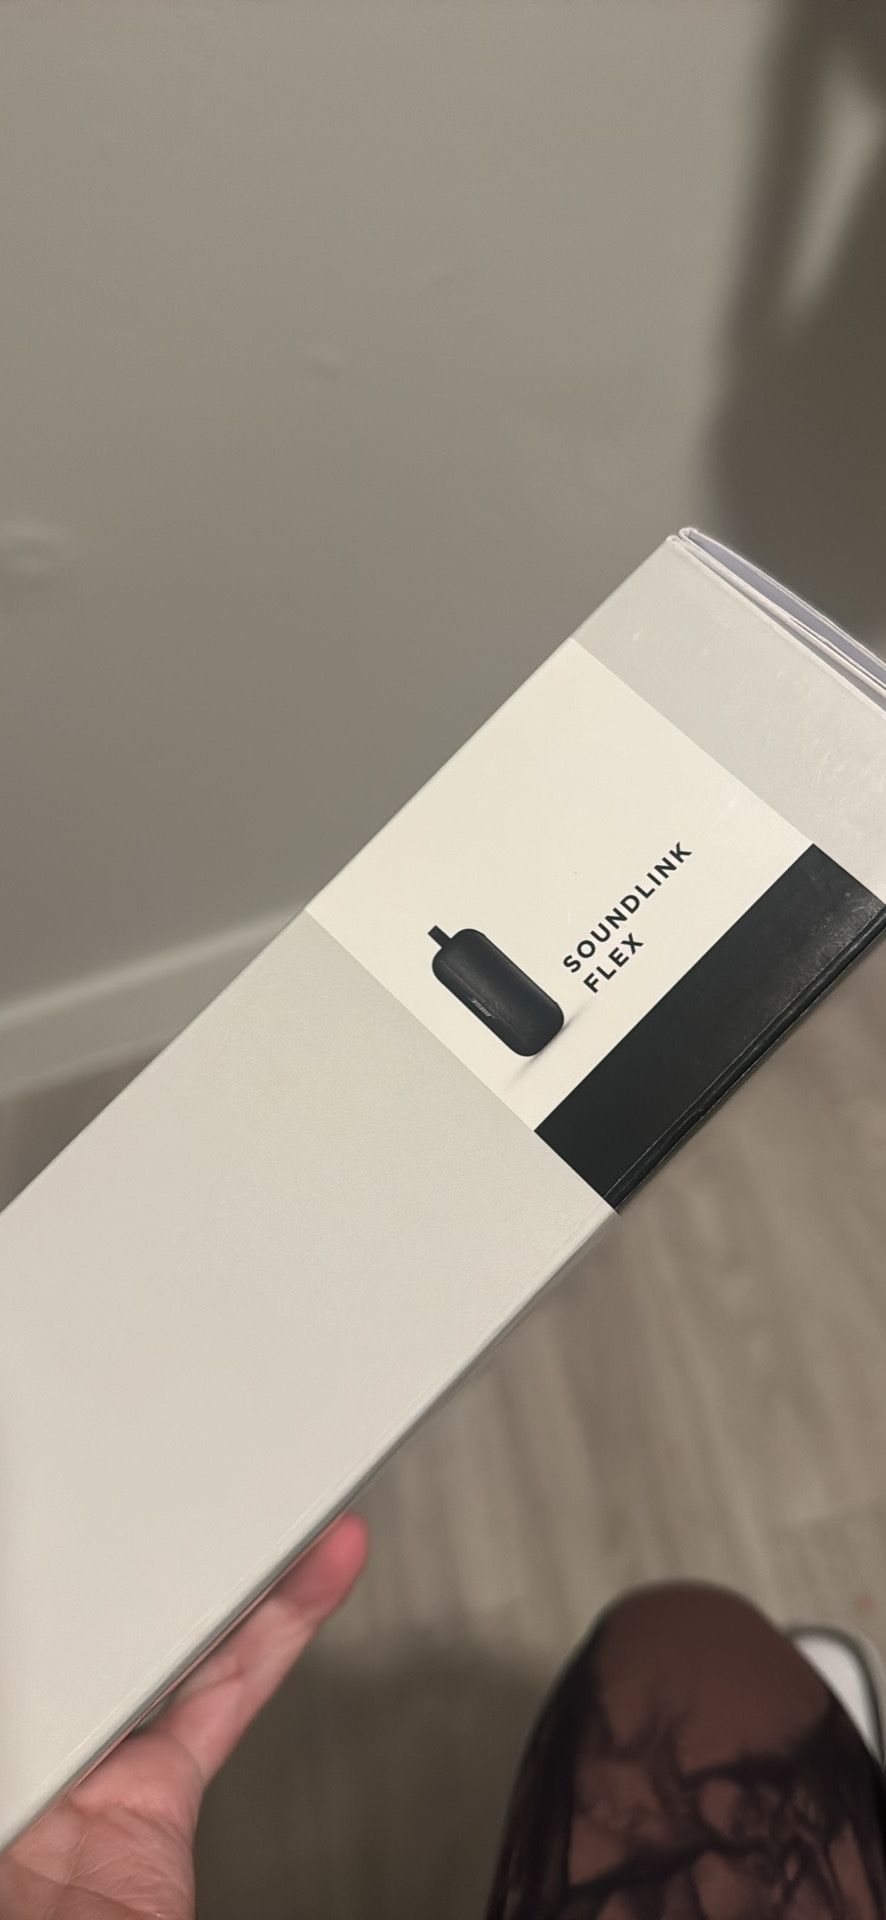 Bose SoundLink Flex Altavoz portátil Bluetooth, altavoz impermeable inalámbrico para viajes al aire libre, color negro